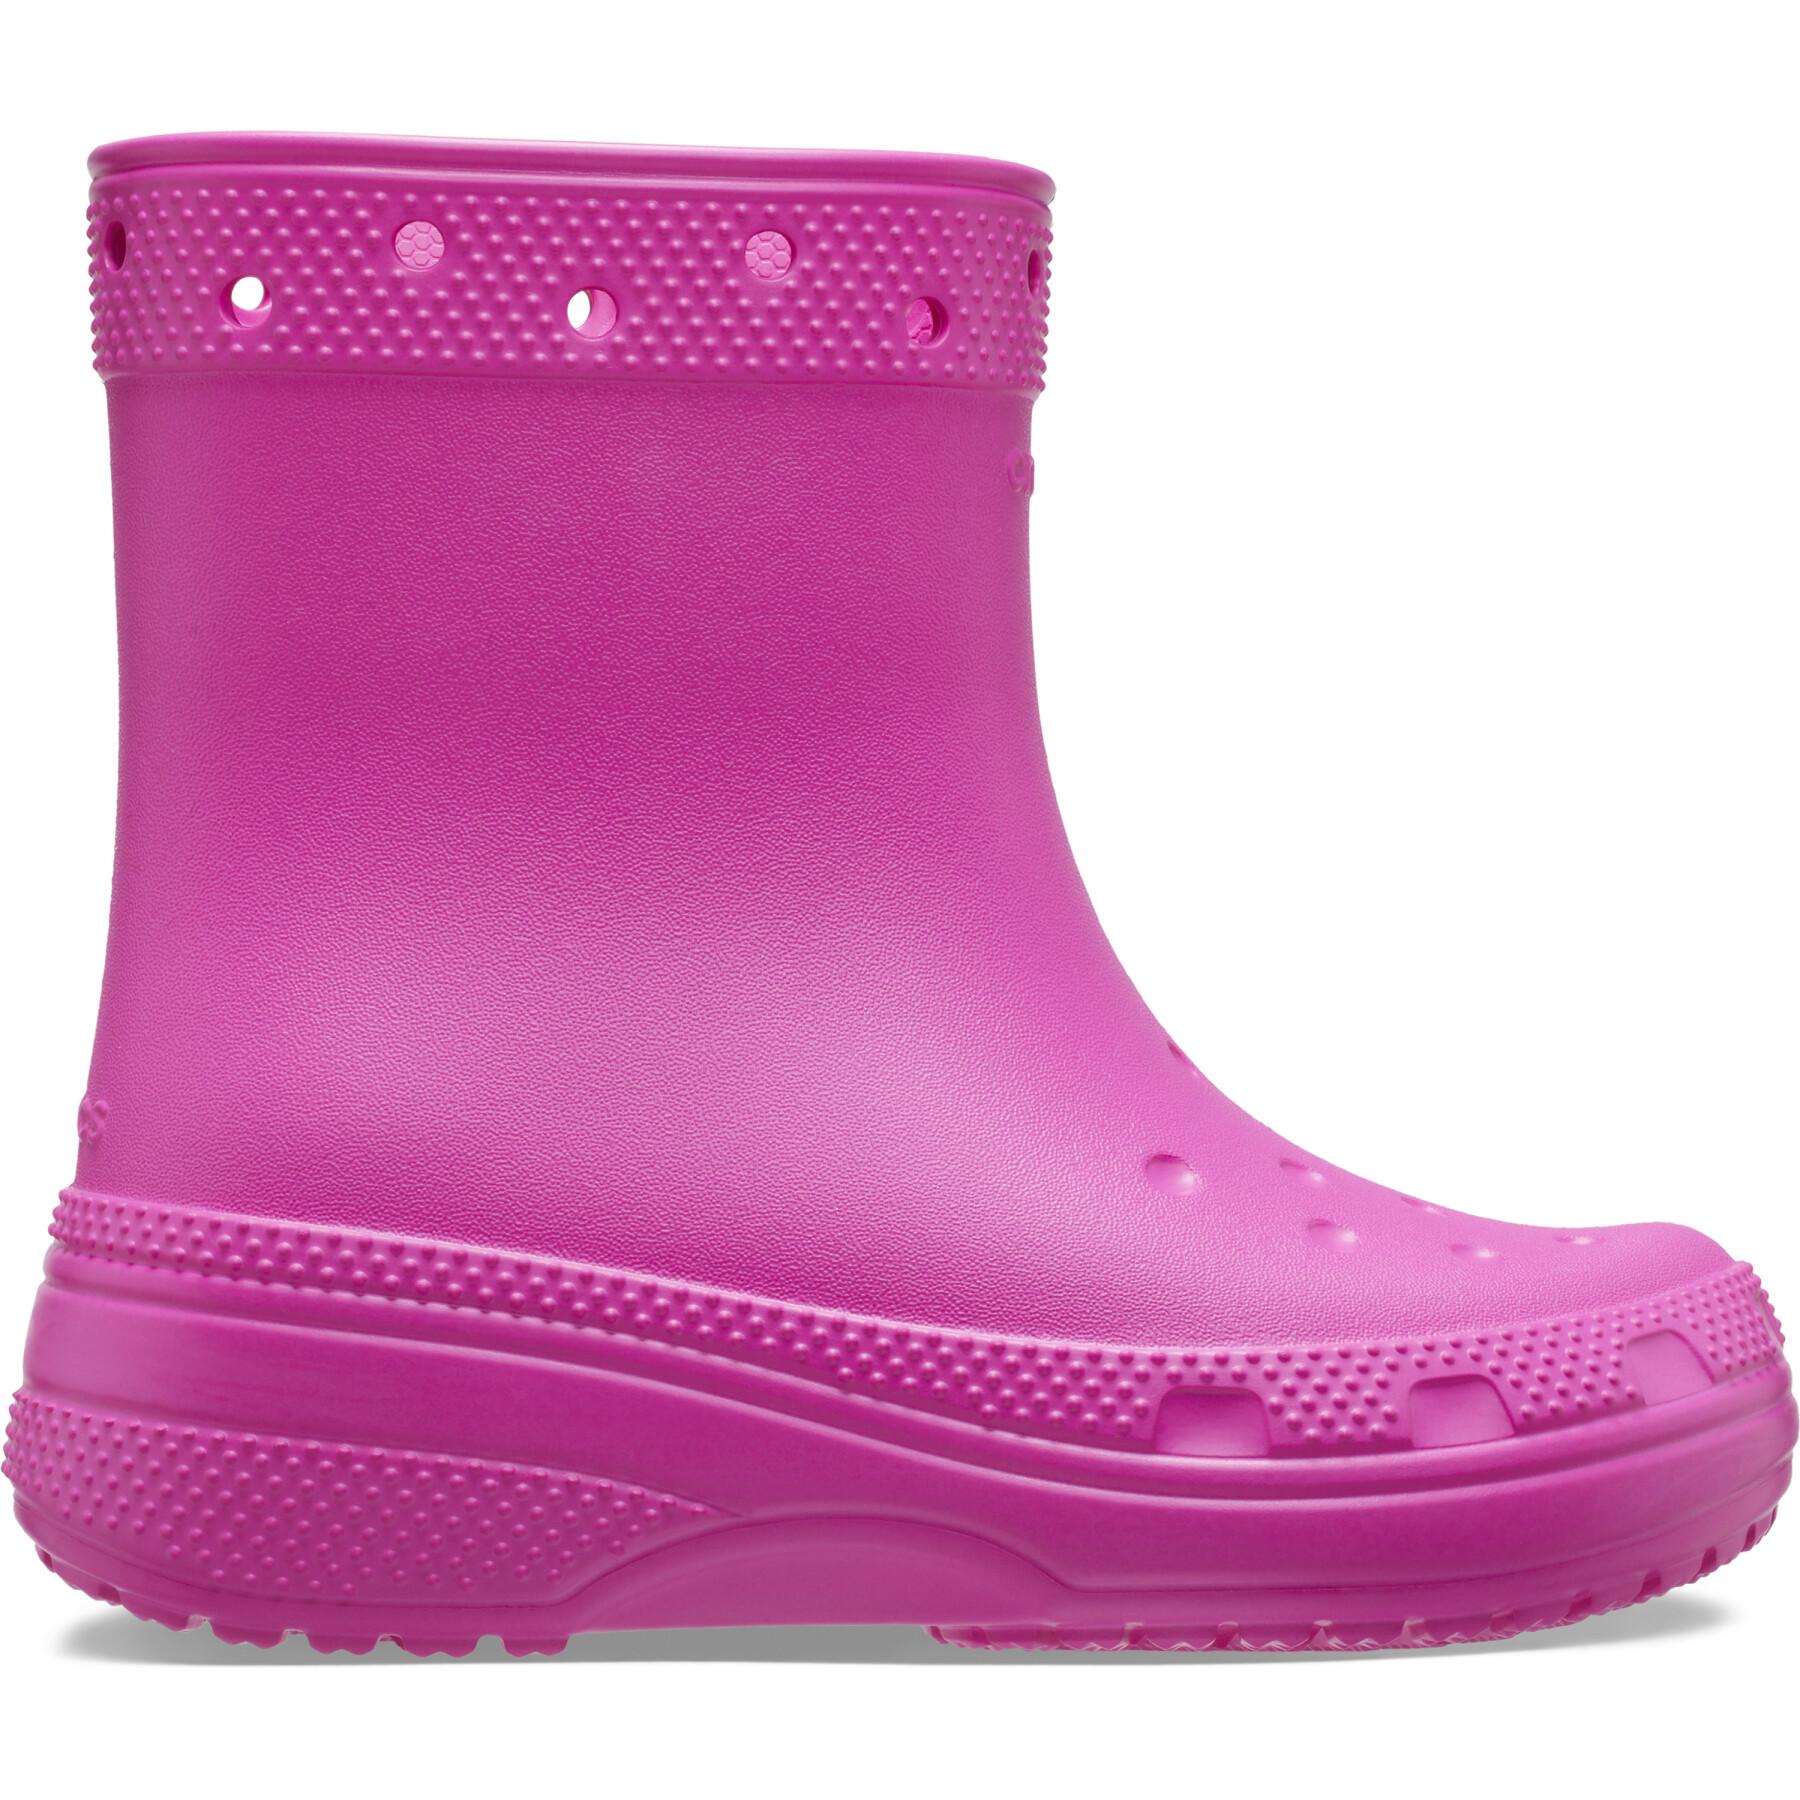 Baby rain boots Crocs Classic